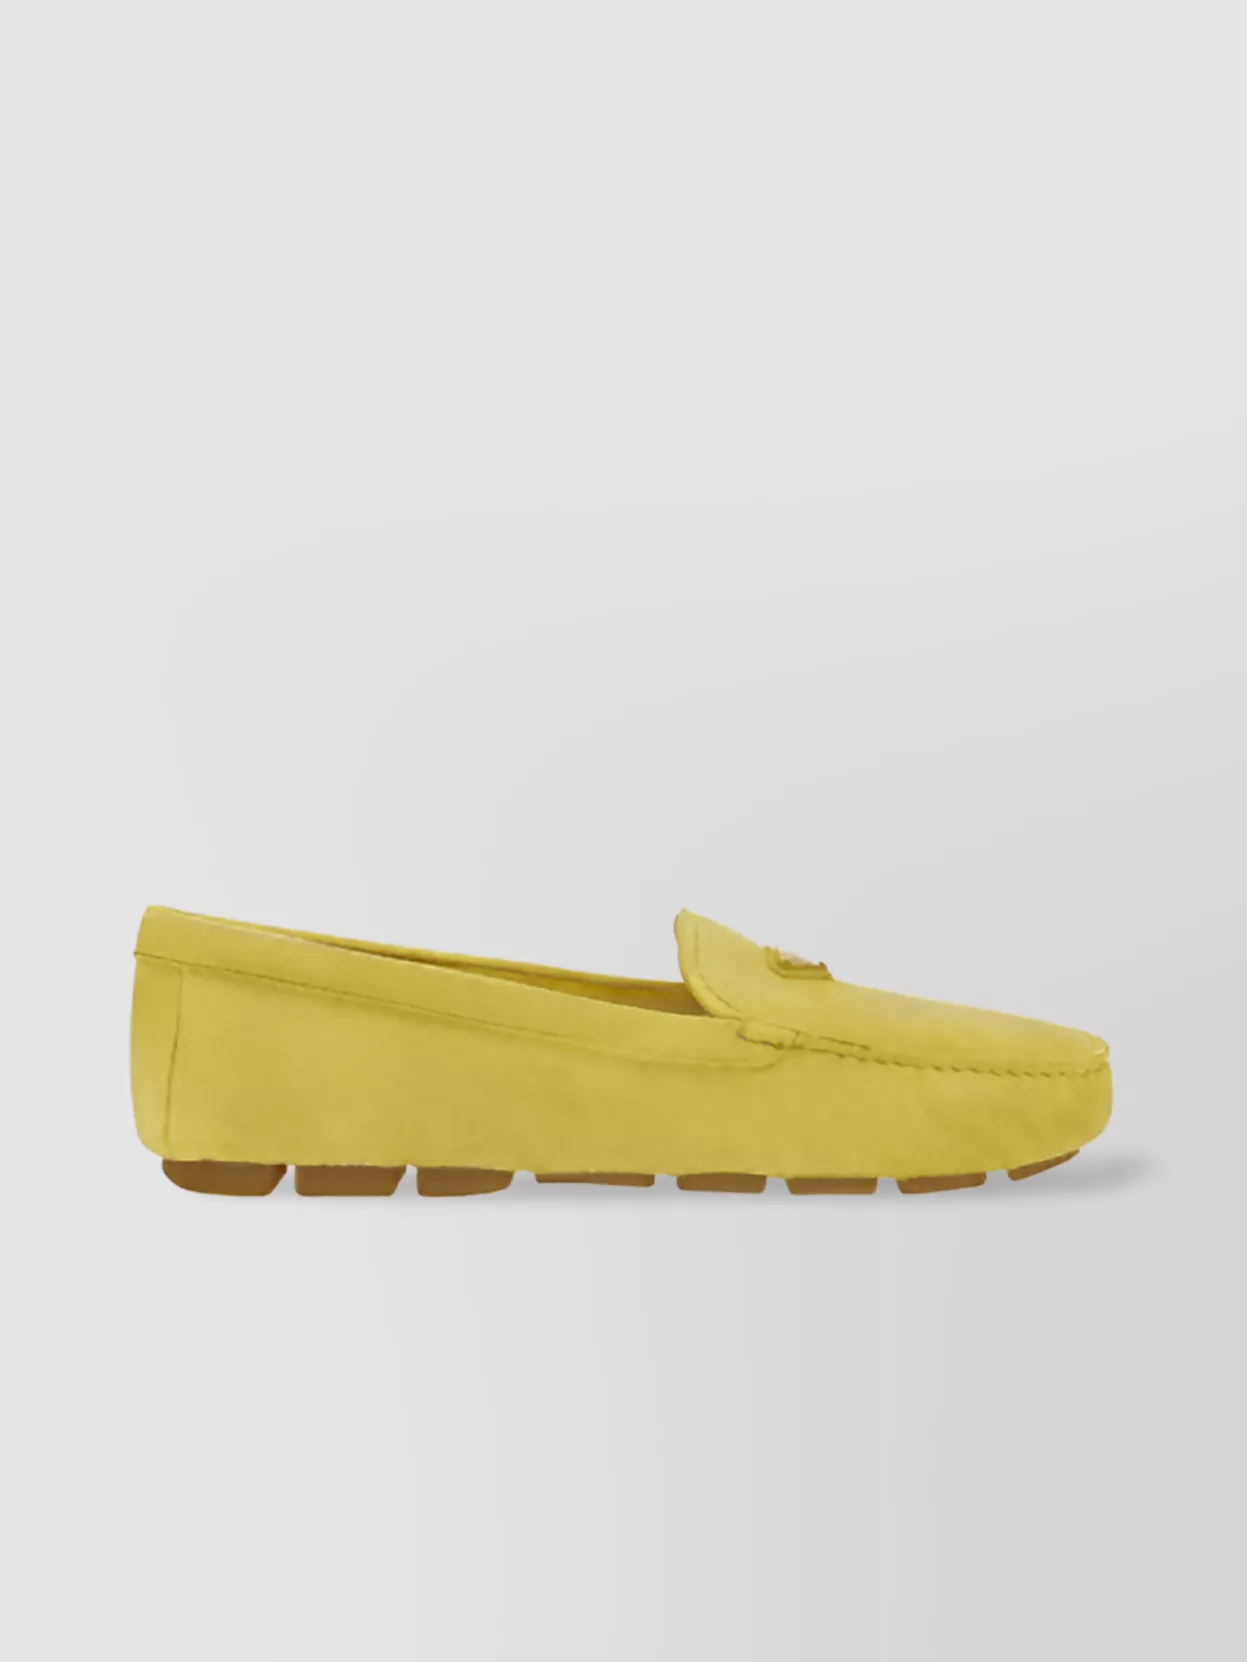 Prada Slip-resistant Square Toe Loafers Calfskin